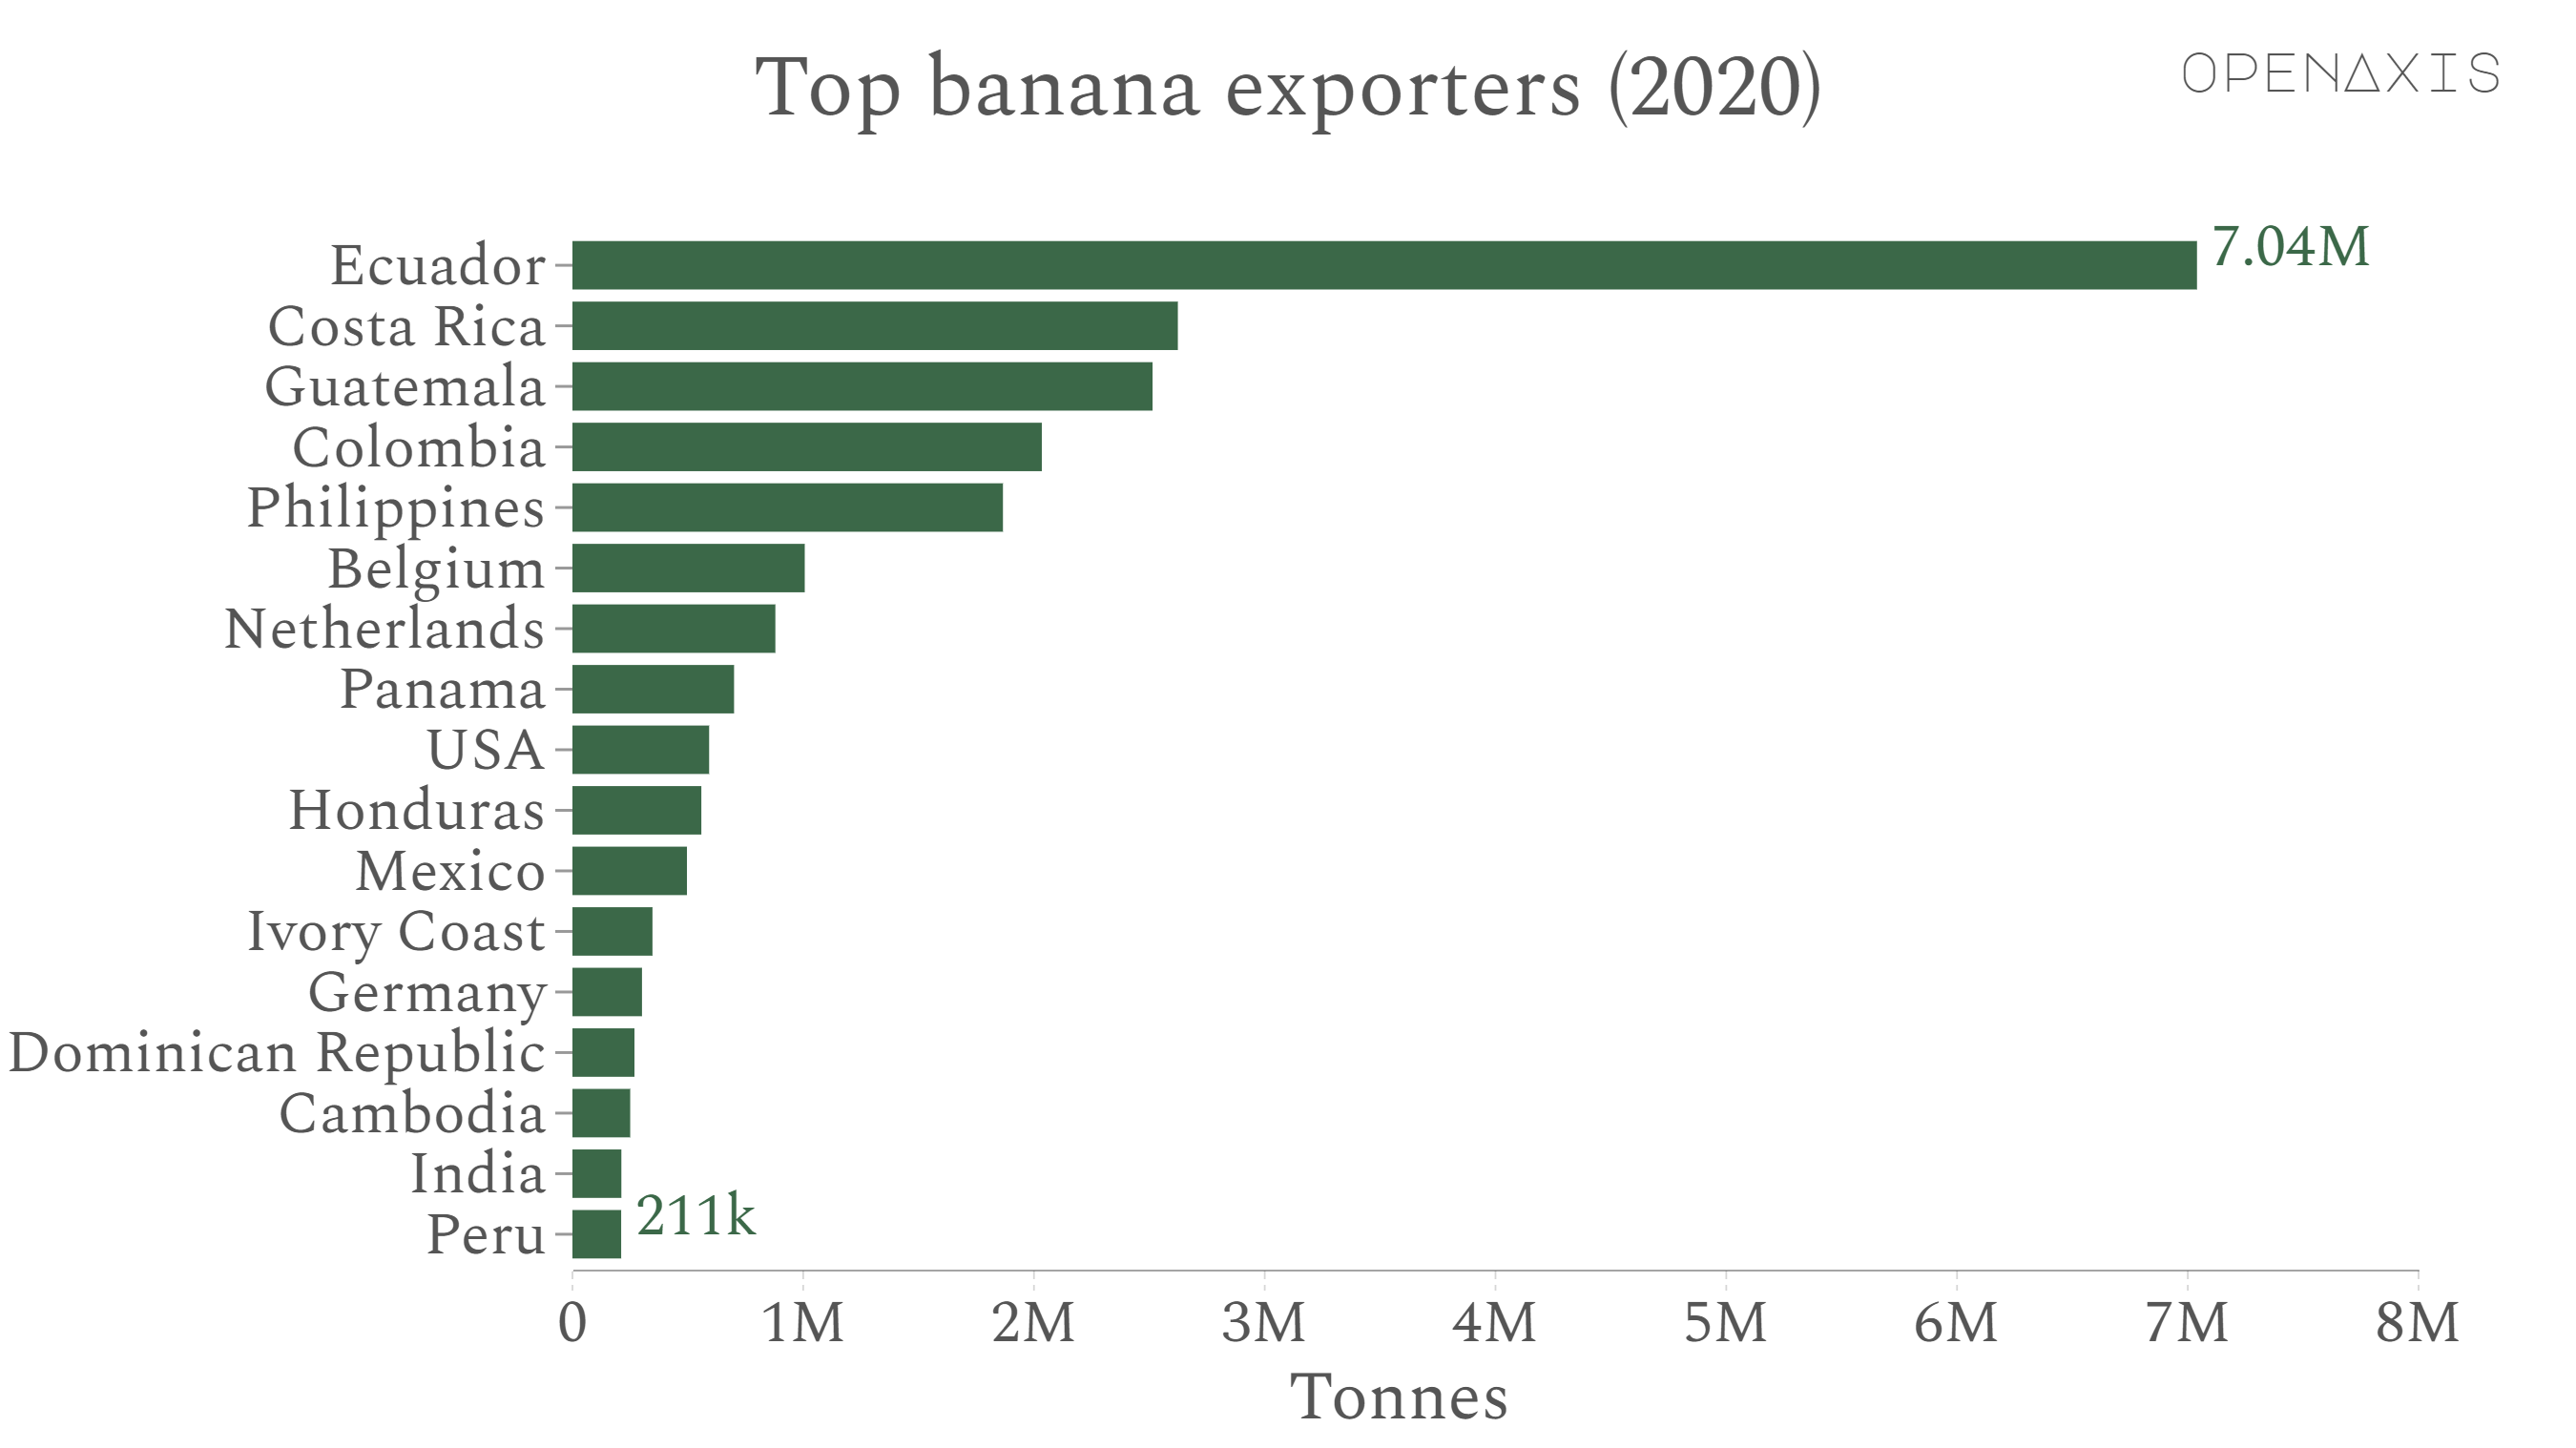 "Top banana exporters (2020)"